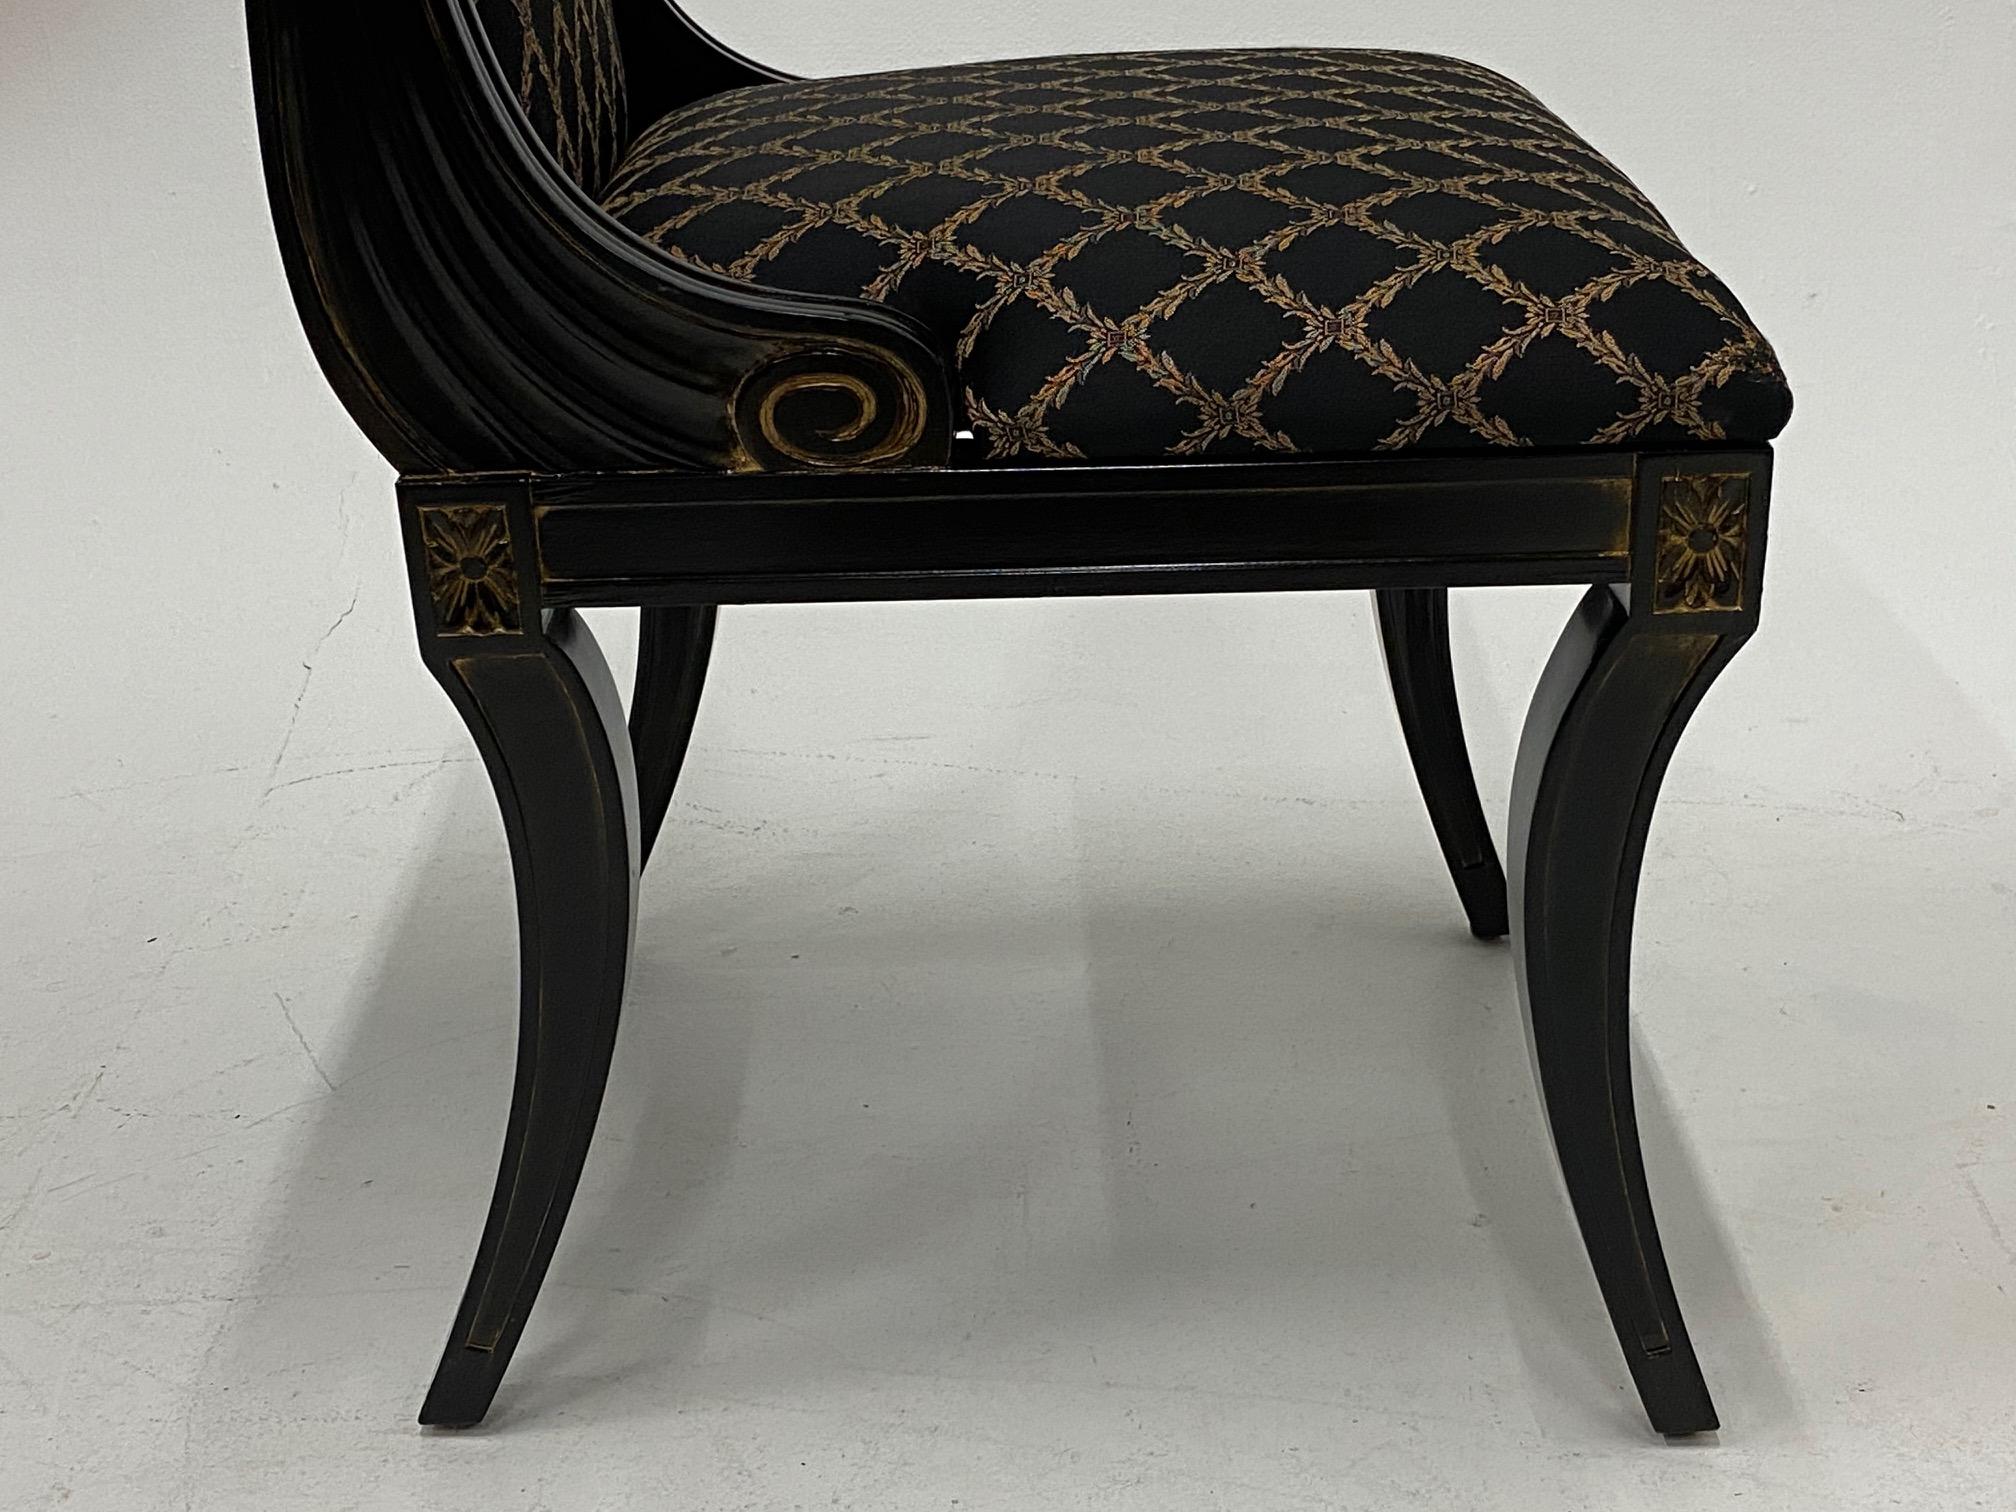 Wood Glamorous Set of 4 Hollywood Regency Ebonized & Gilt Decorated Dining Chairs